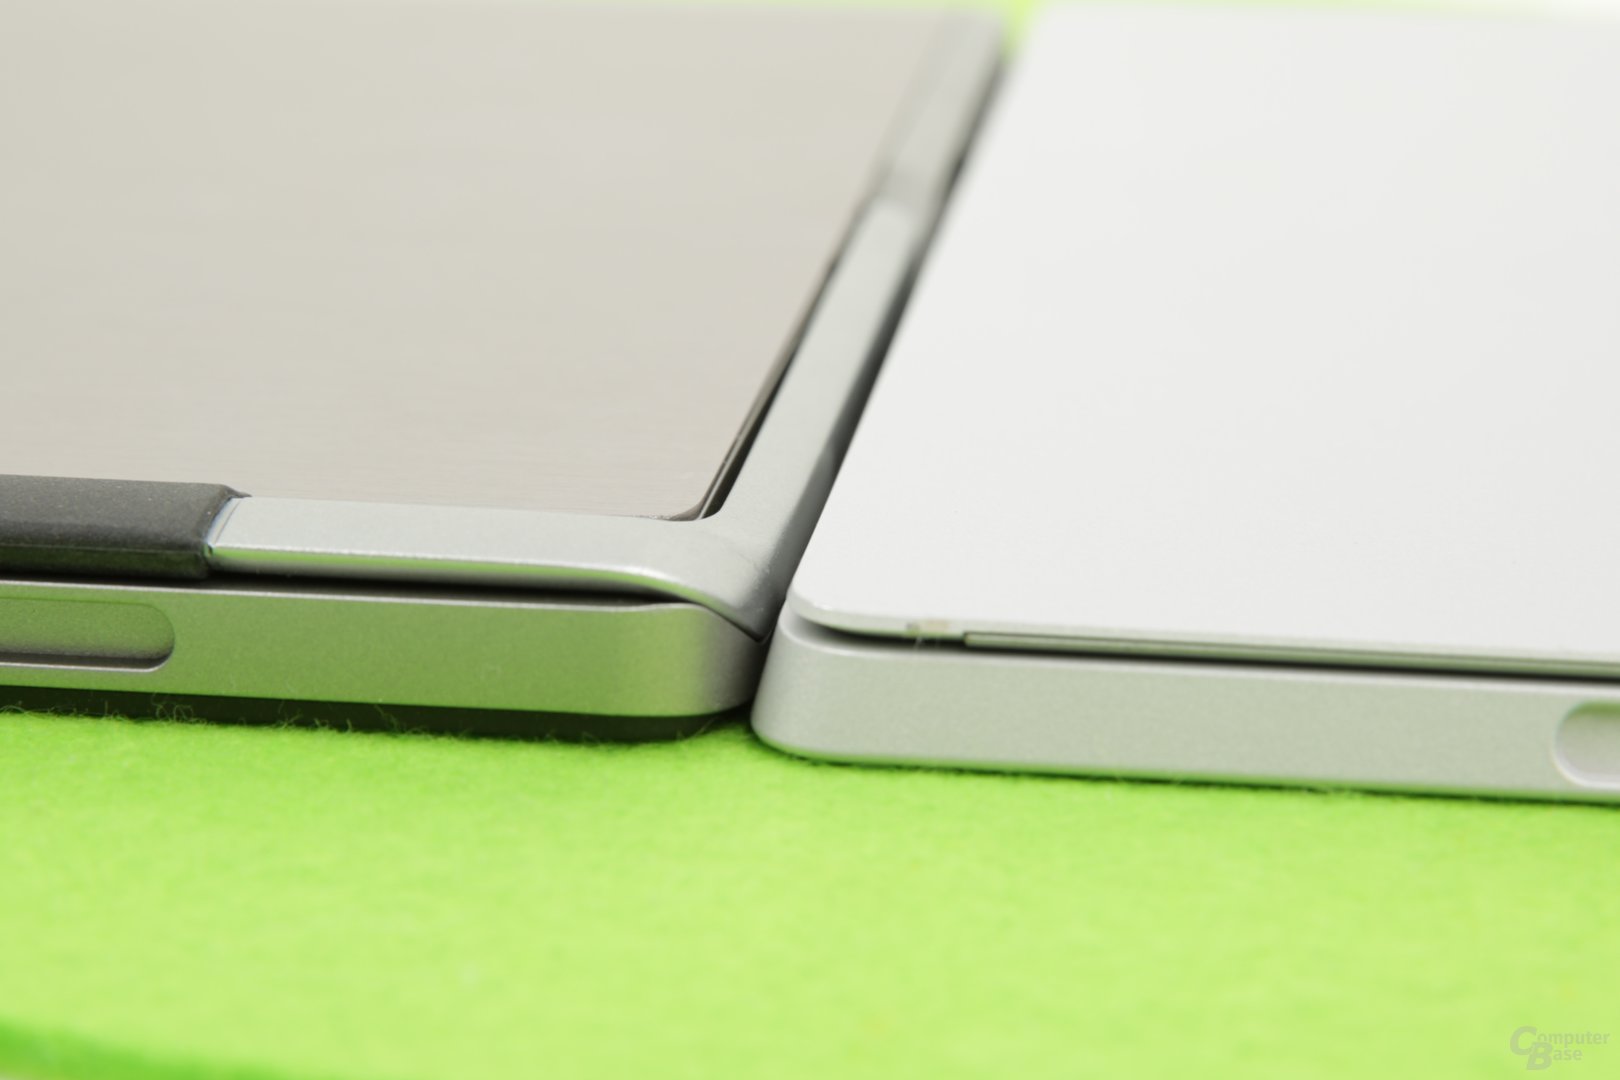 1,1 mm dicker als das Surface Pro 4 (rechts)